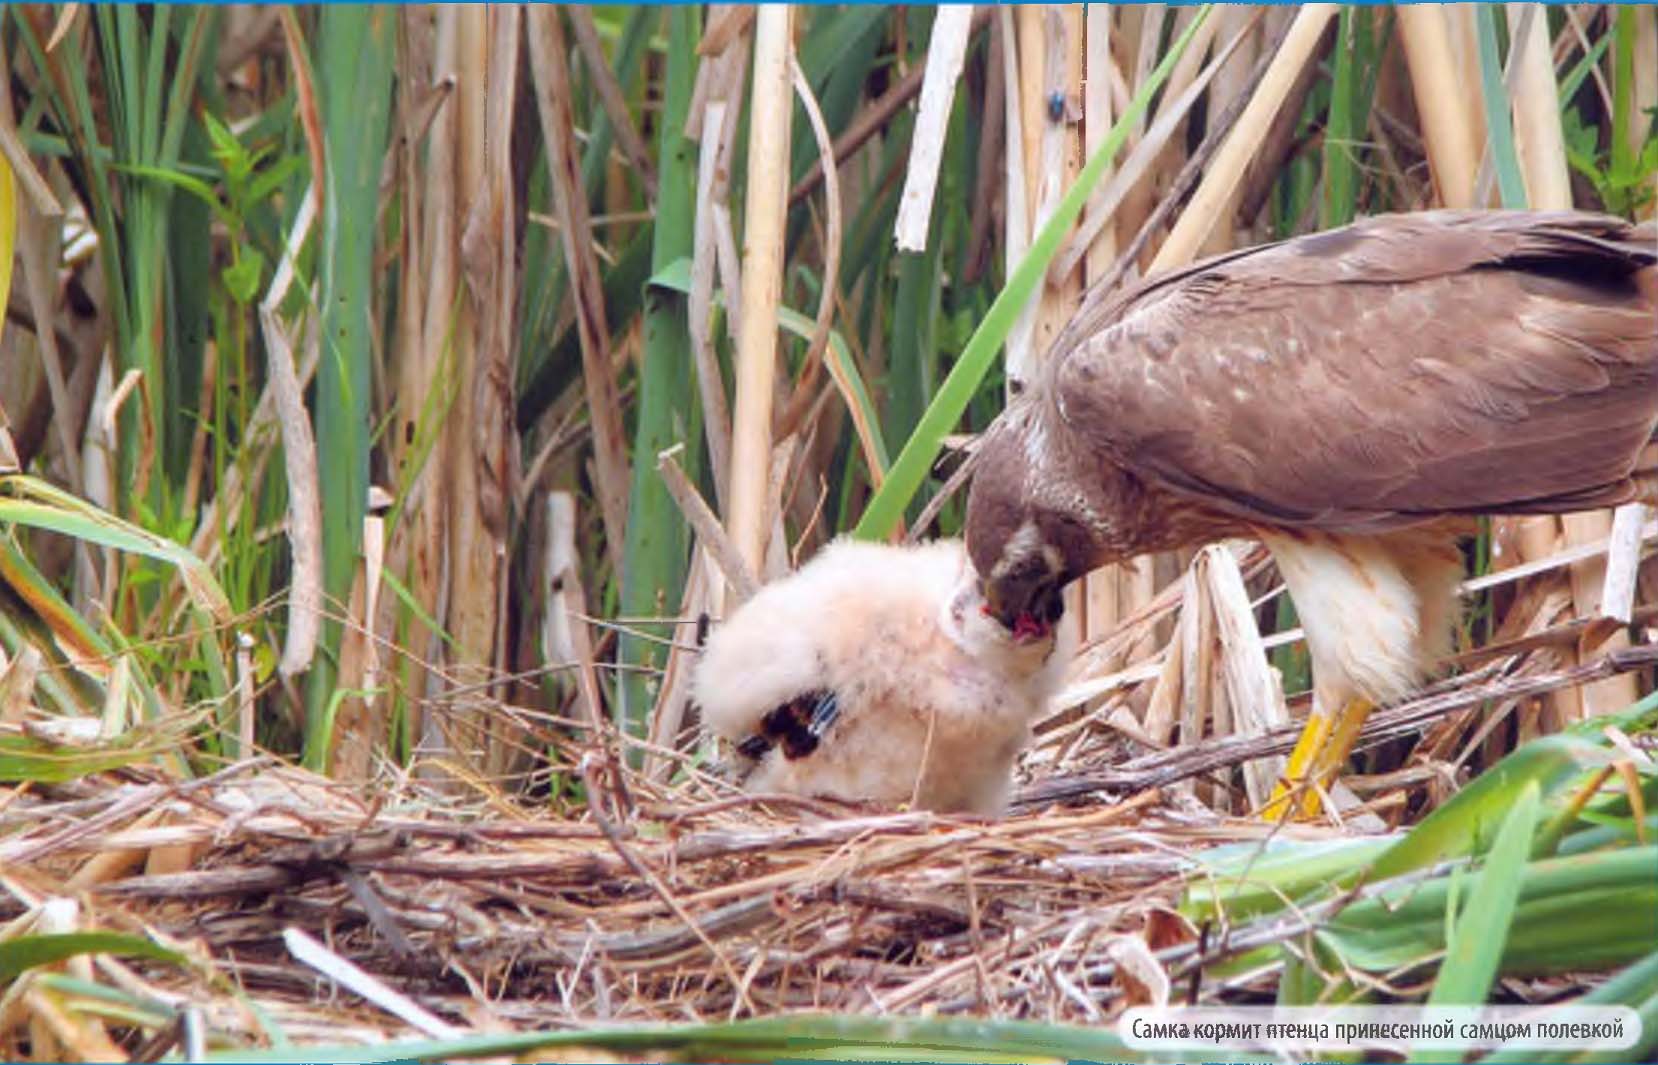 Самка кормит птенцов принесенной самцом полевкой.
